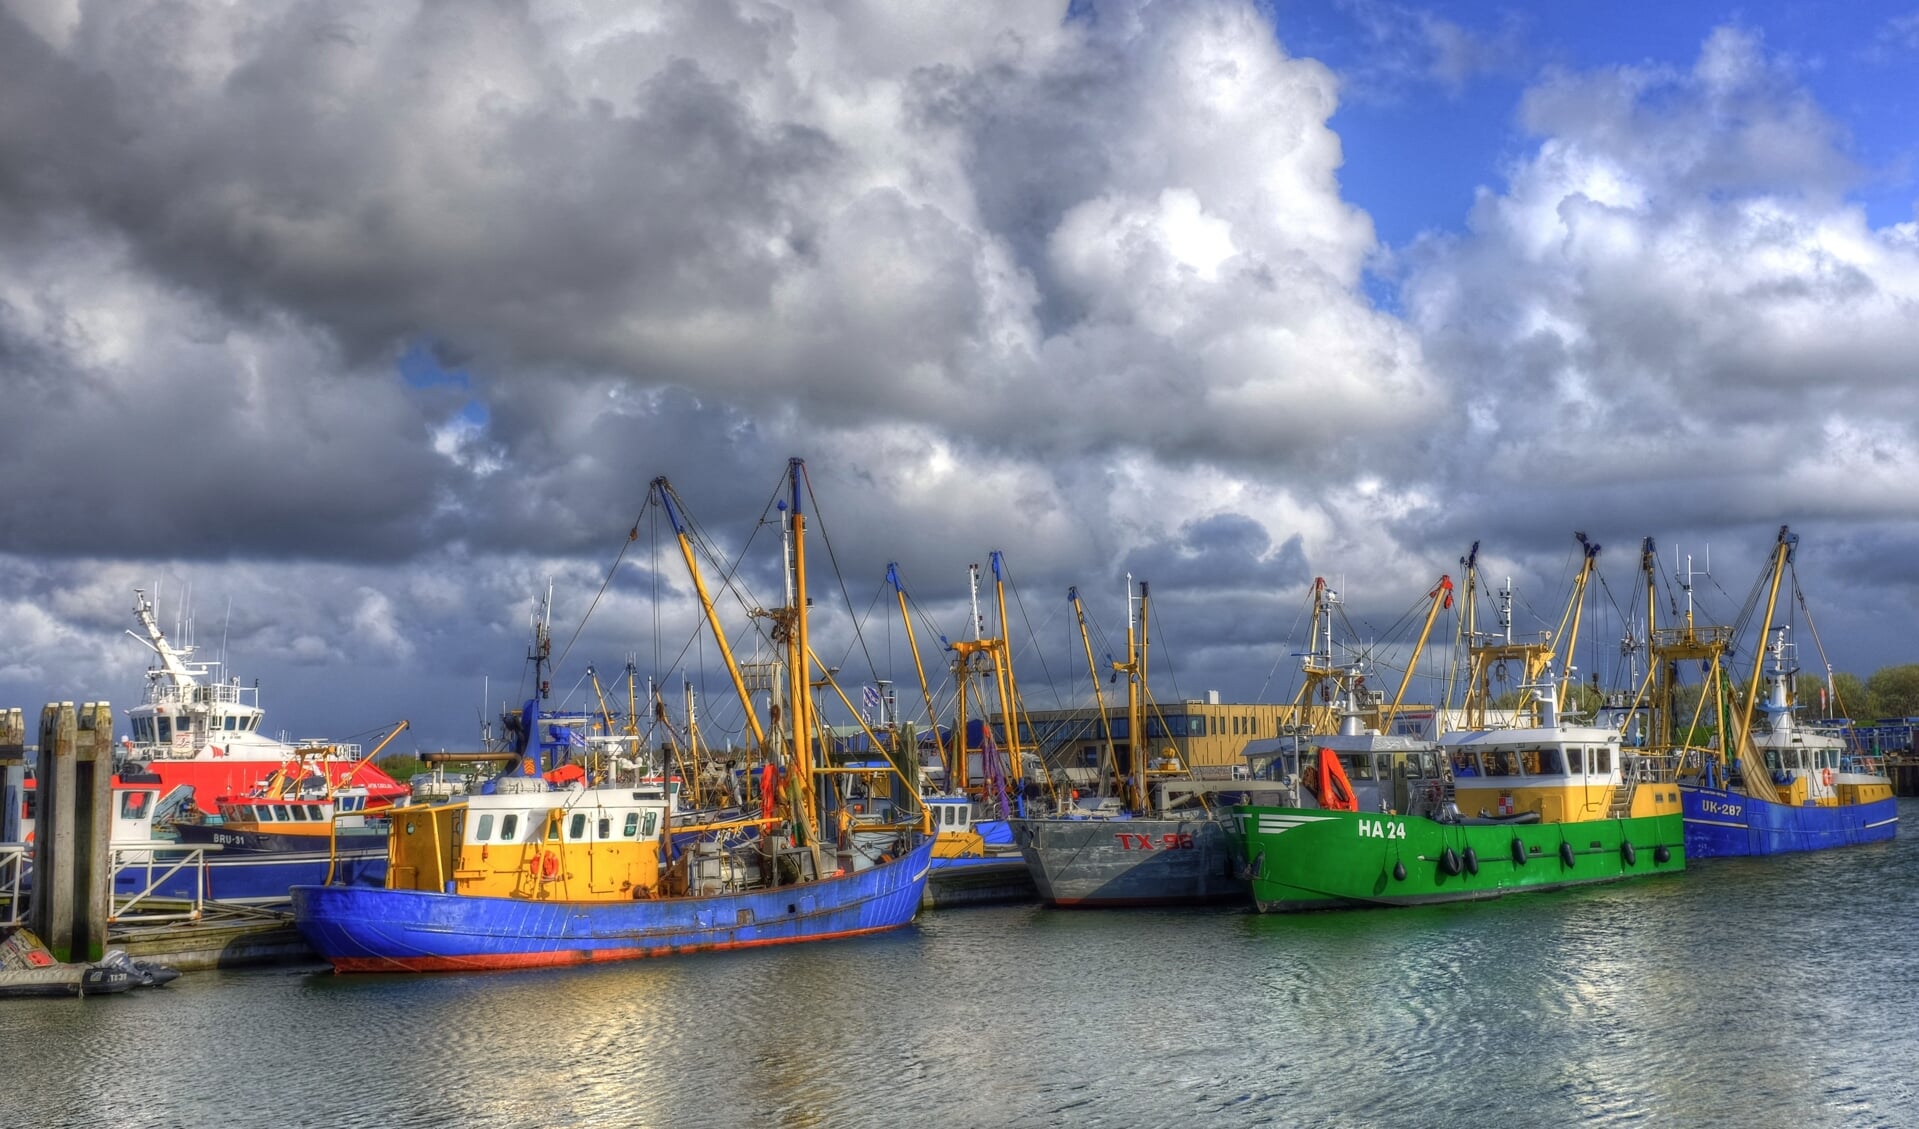 Vissers in de haven van Lauwersoog